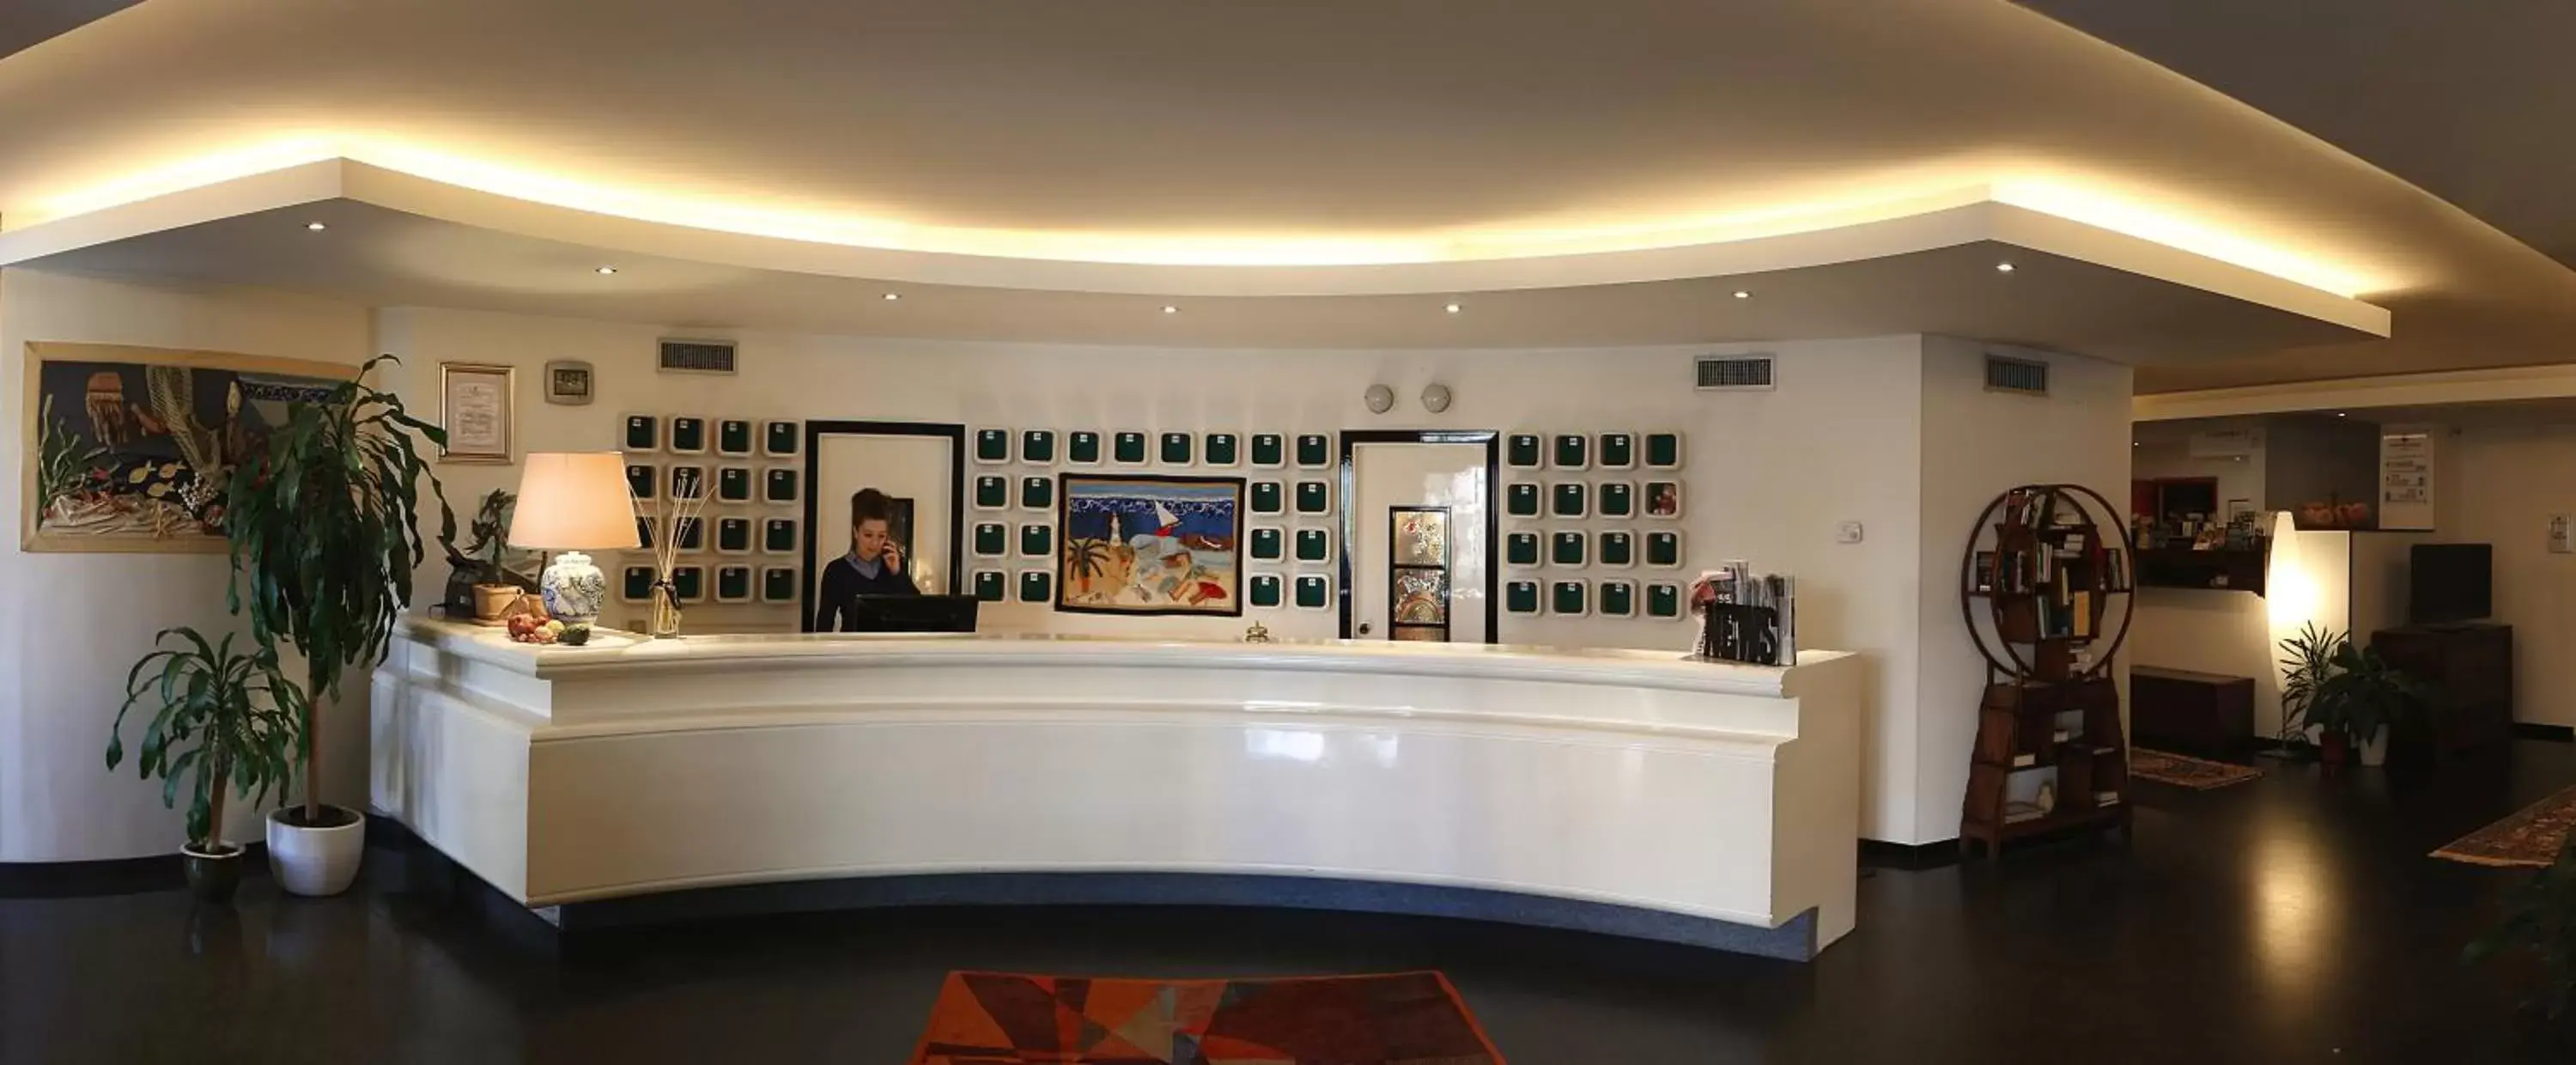 Lobby or reception in Hotel International